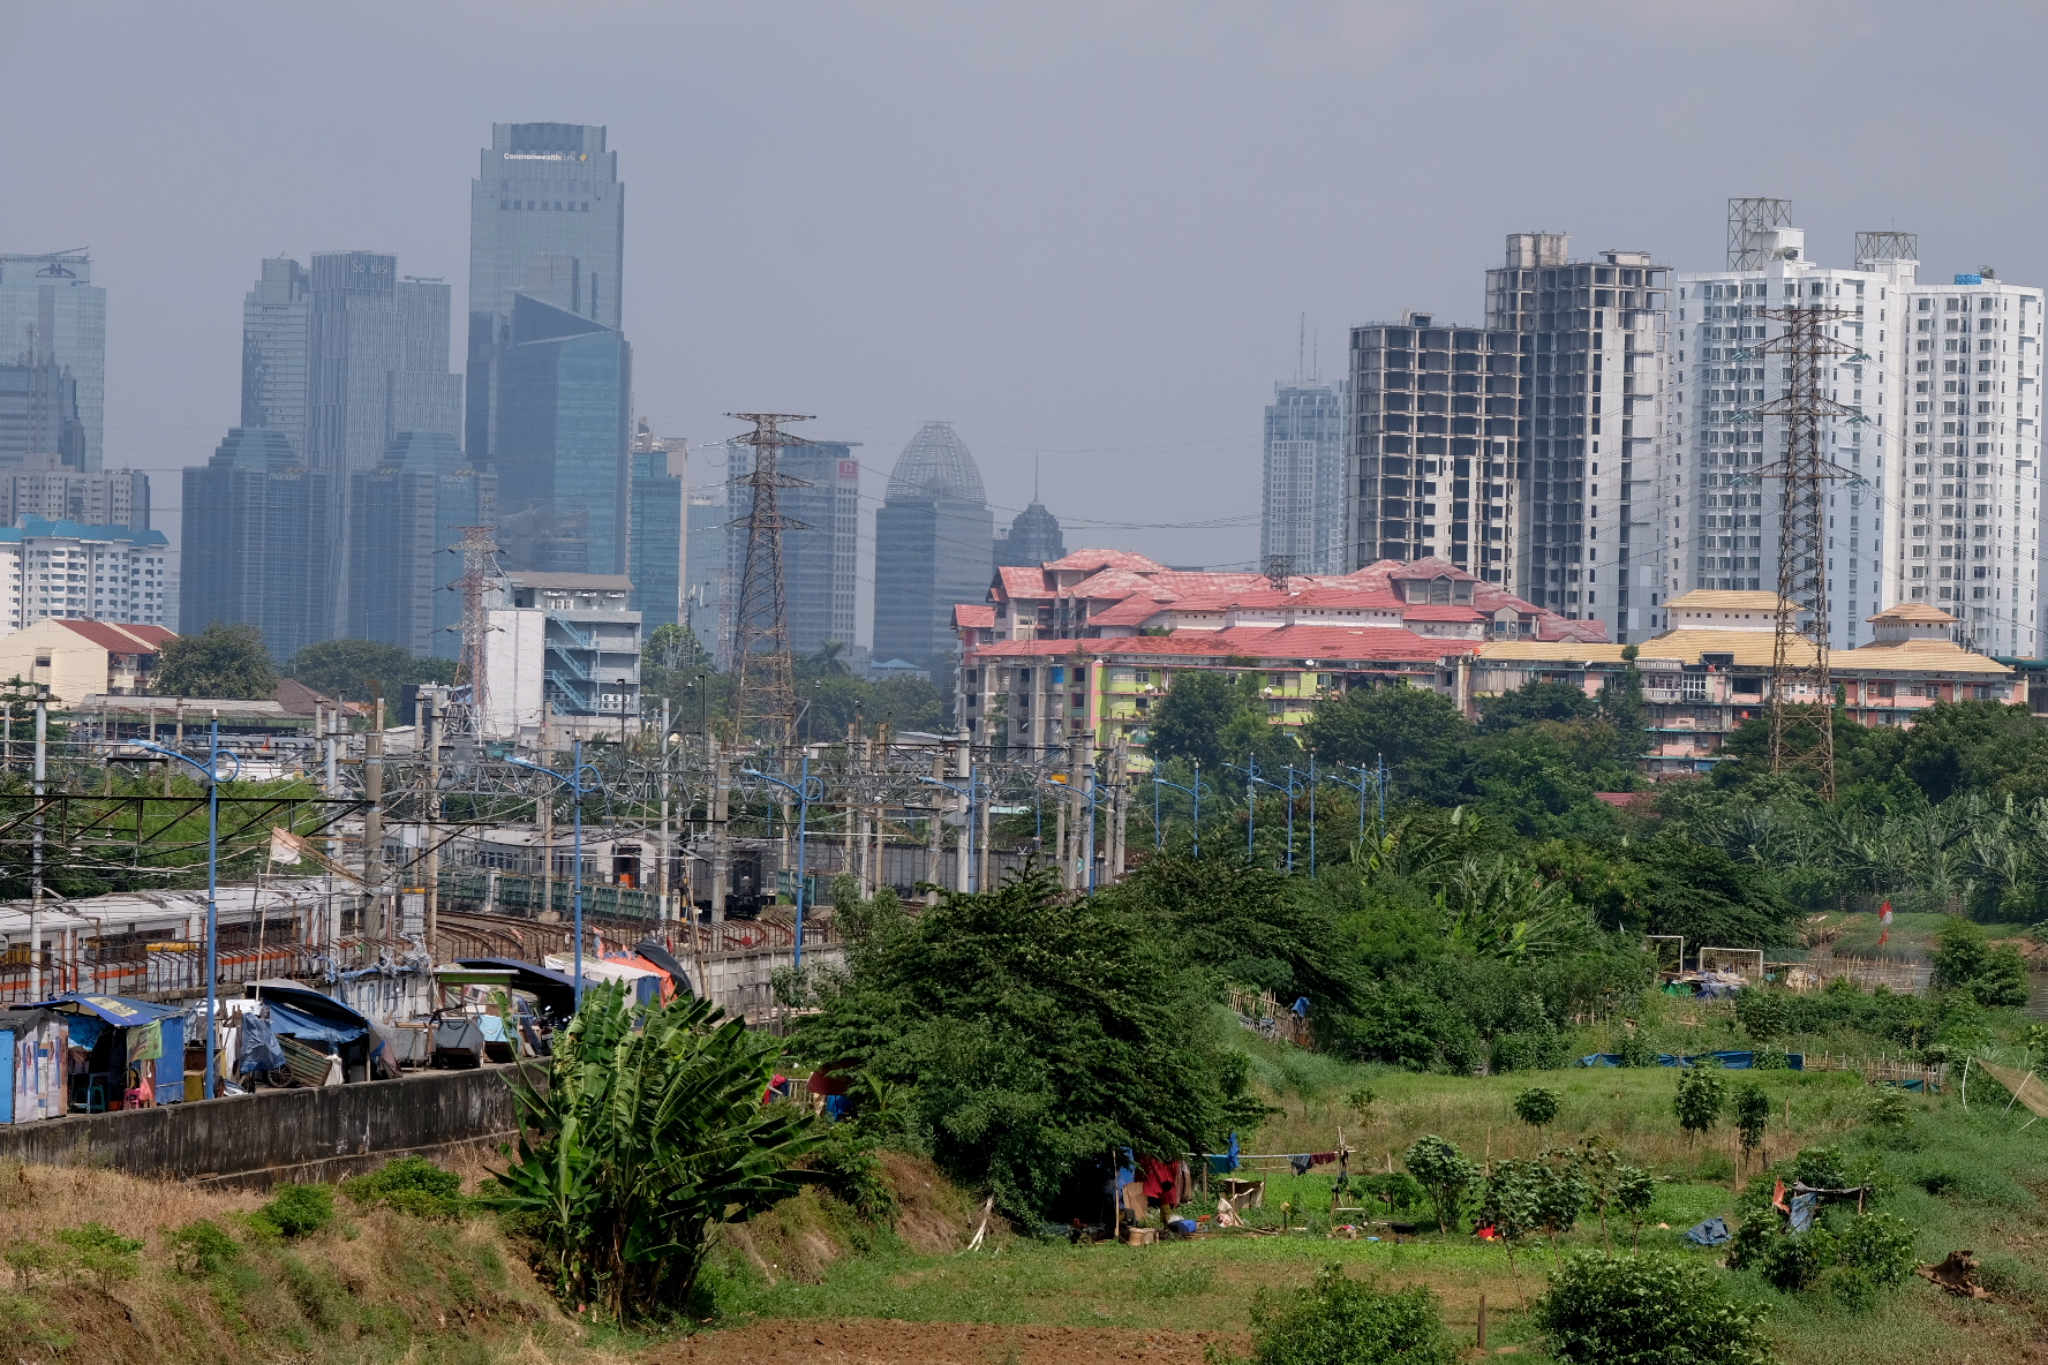 <p>Lanskap gedung bertingkat diambil dari kawasan Tanah Abang, Jakarta, Kamis, 27 Mei 2021. Foto: Ismail Pohan/TrenAsia</p>
